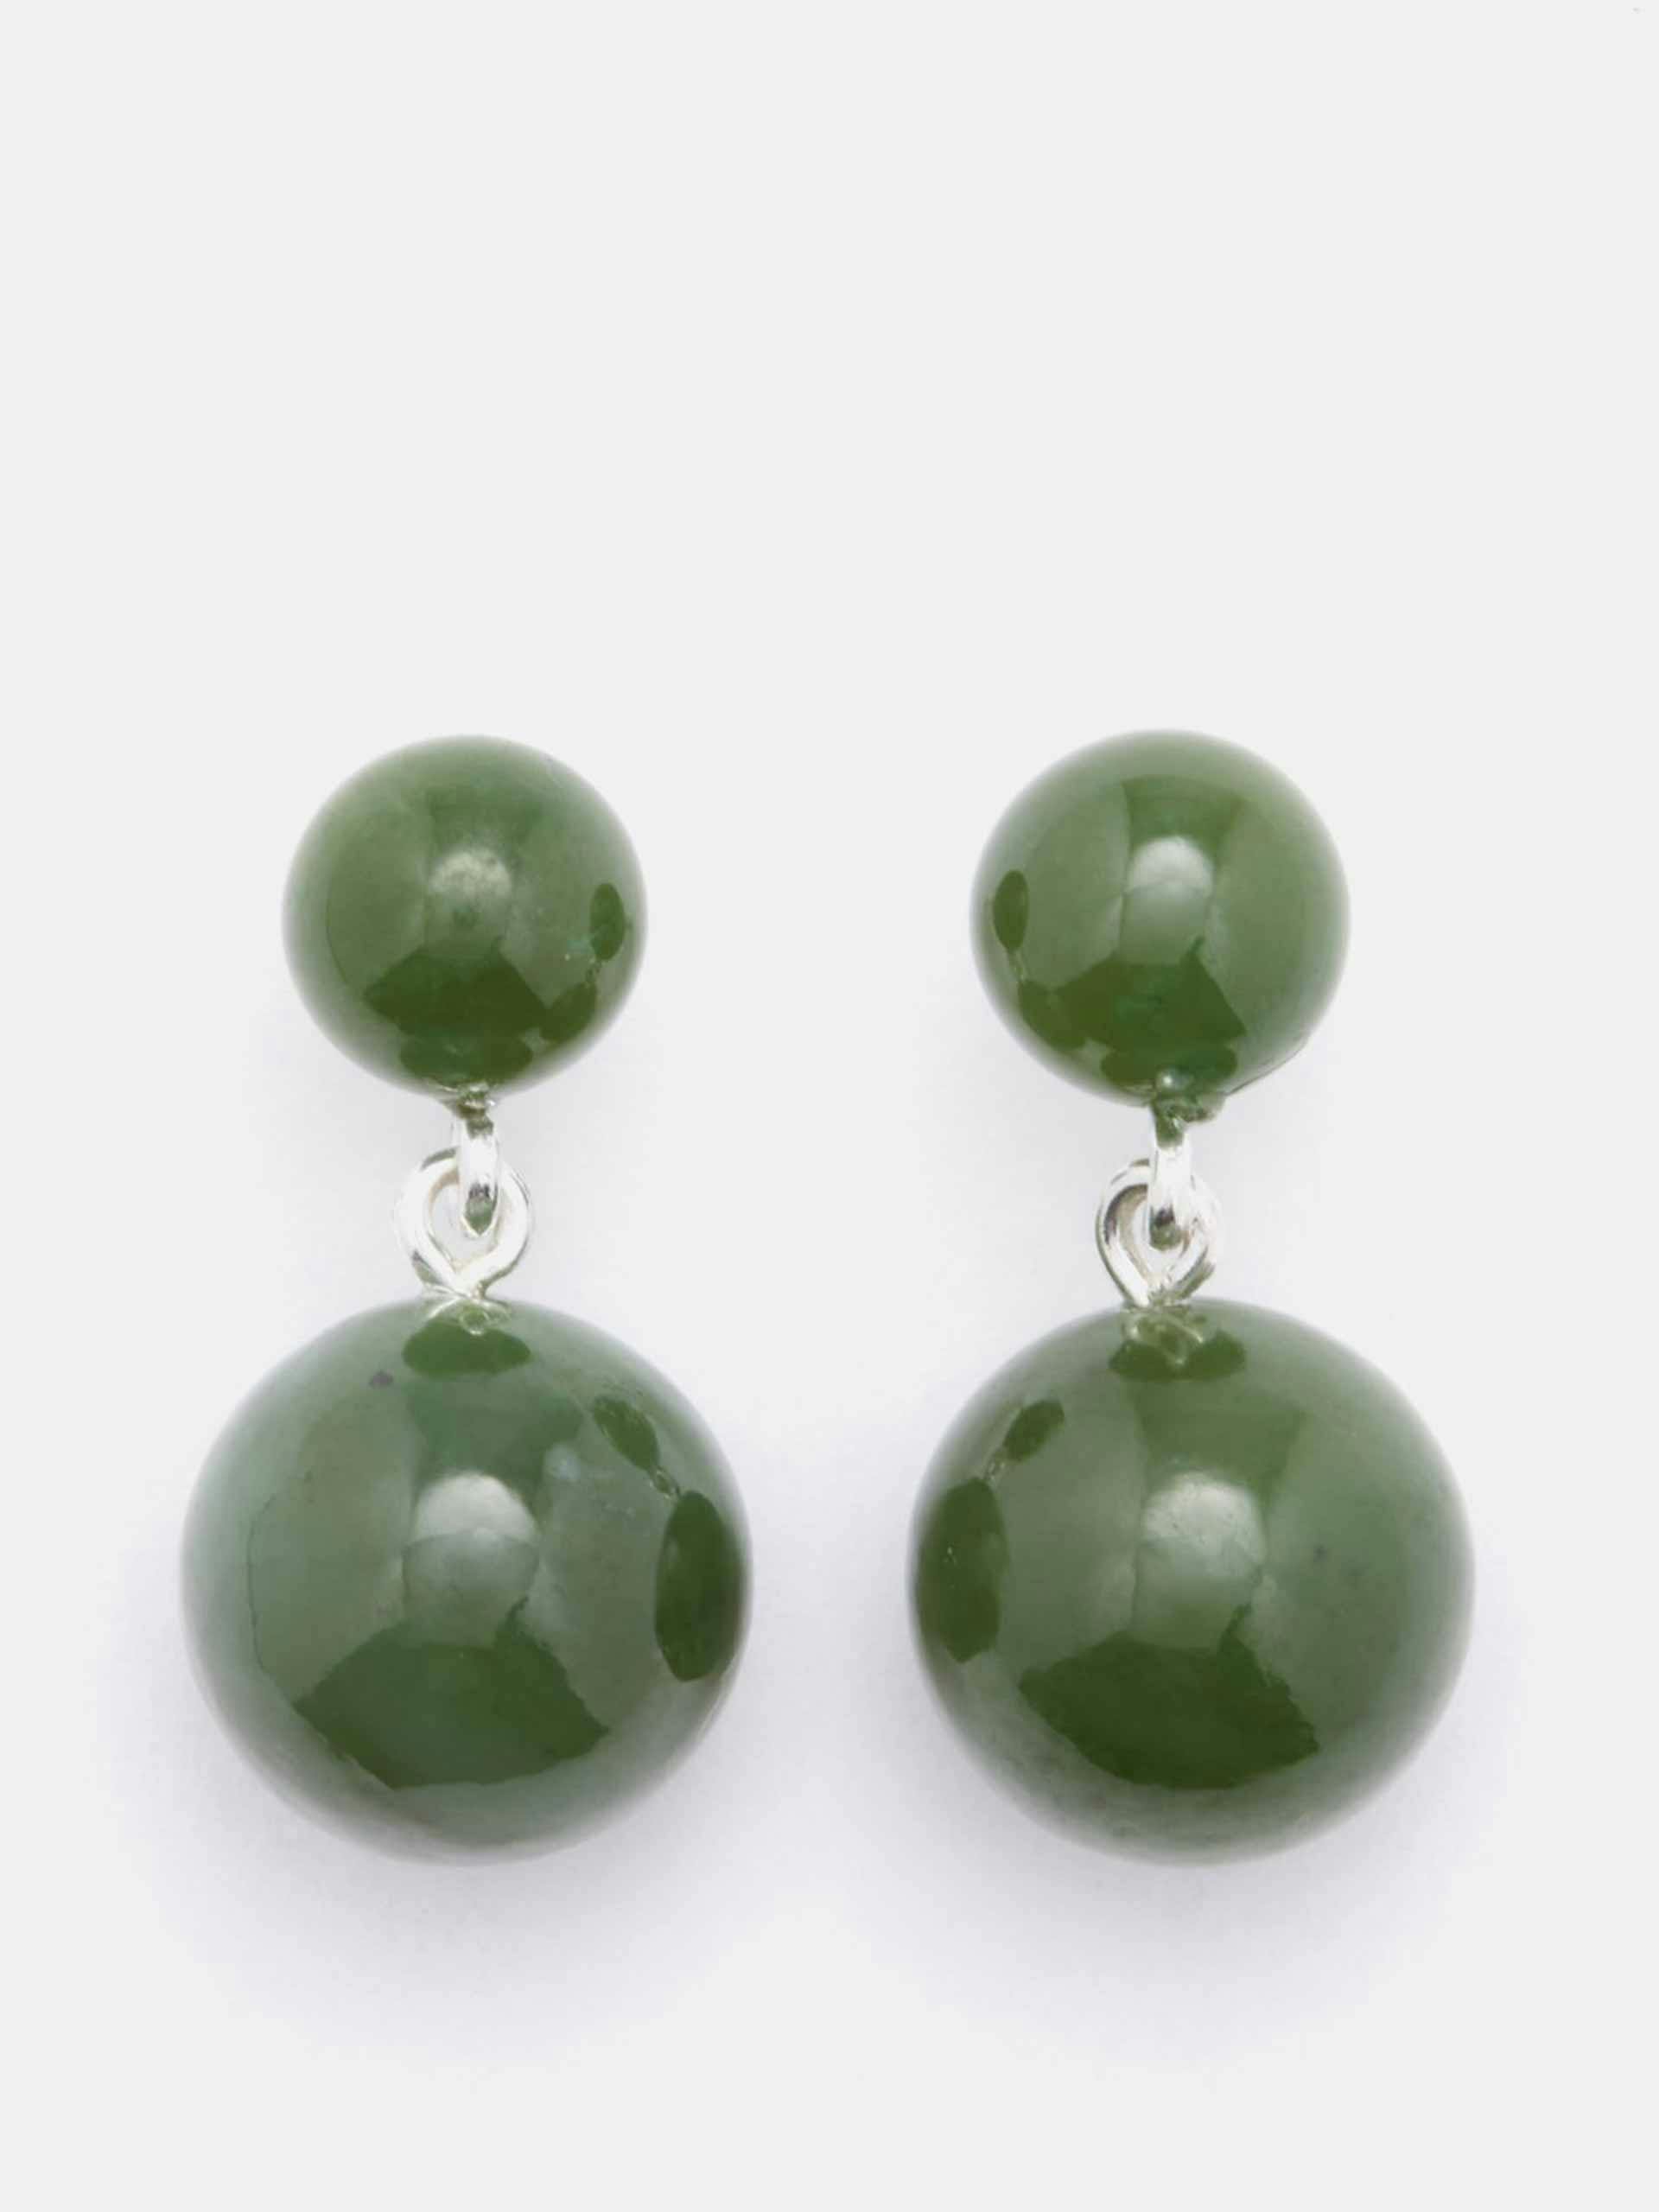 Jade boule earrings